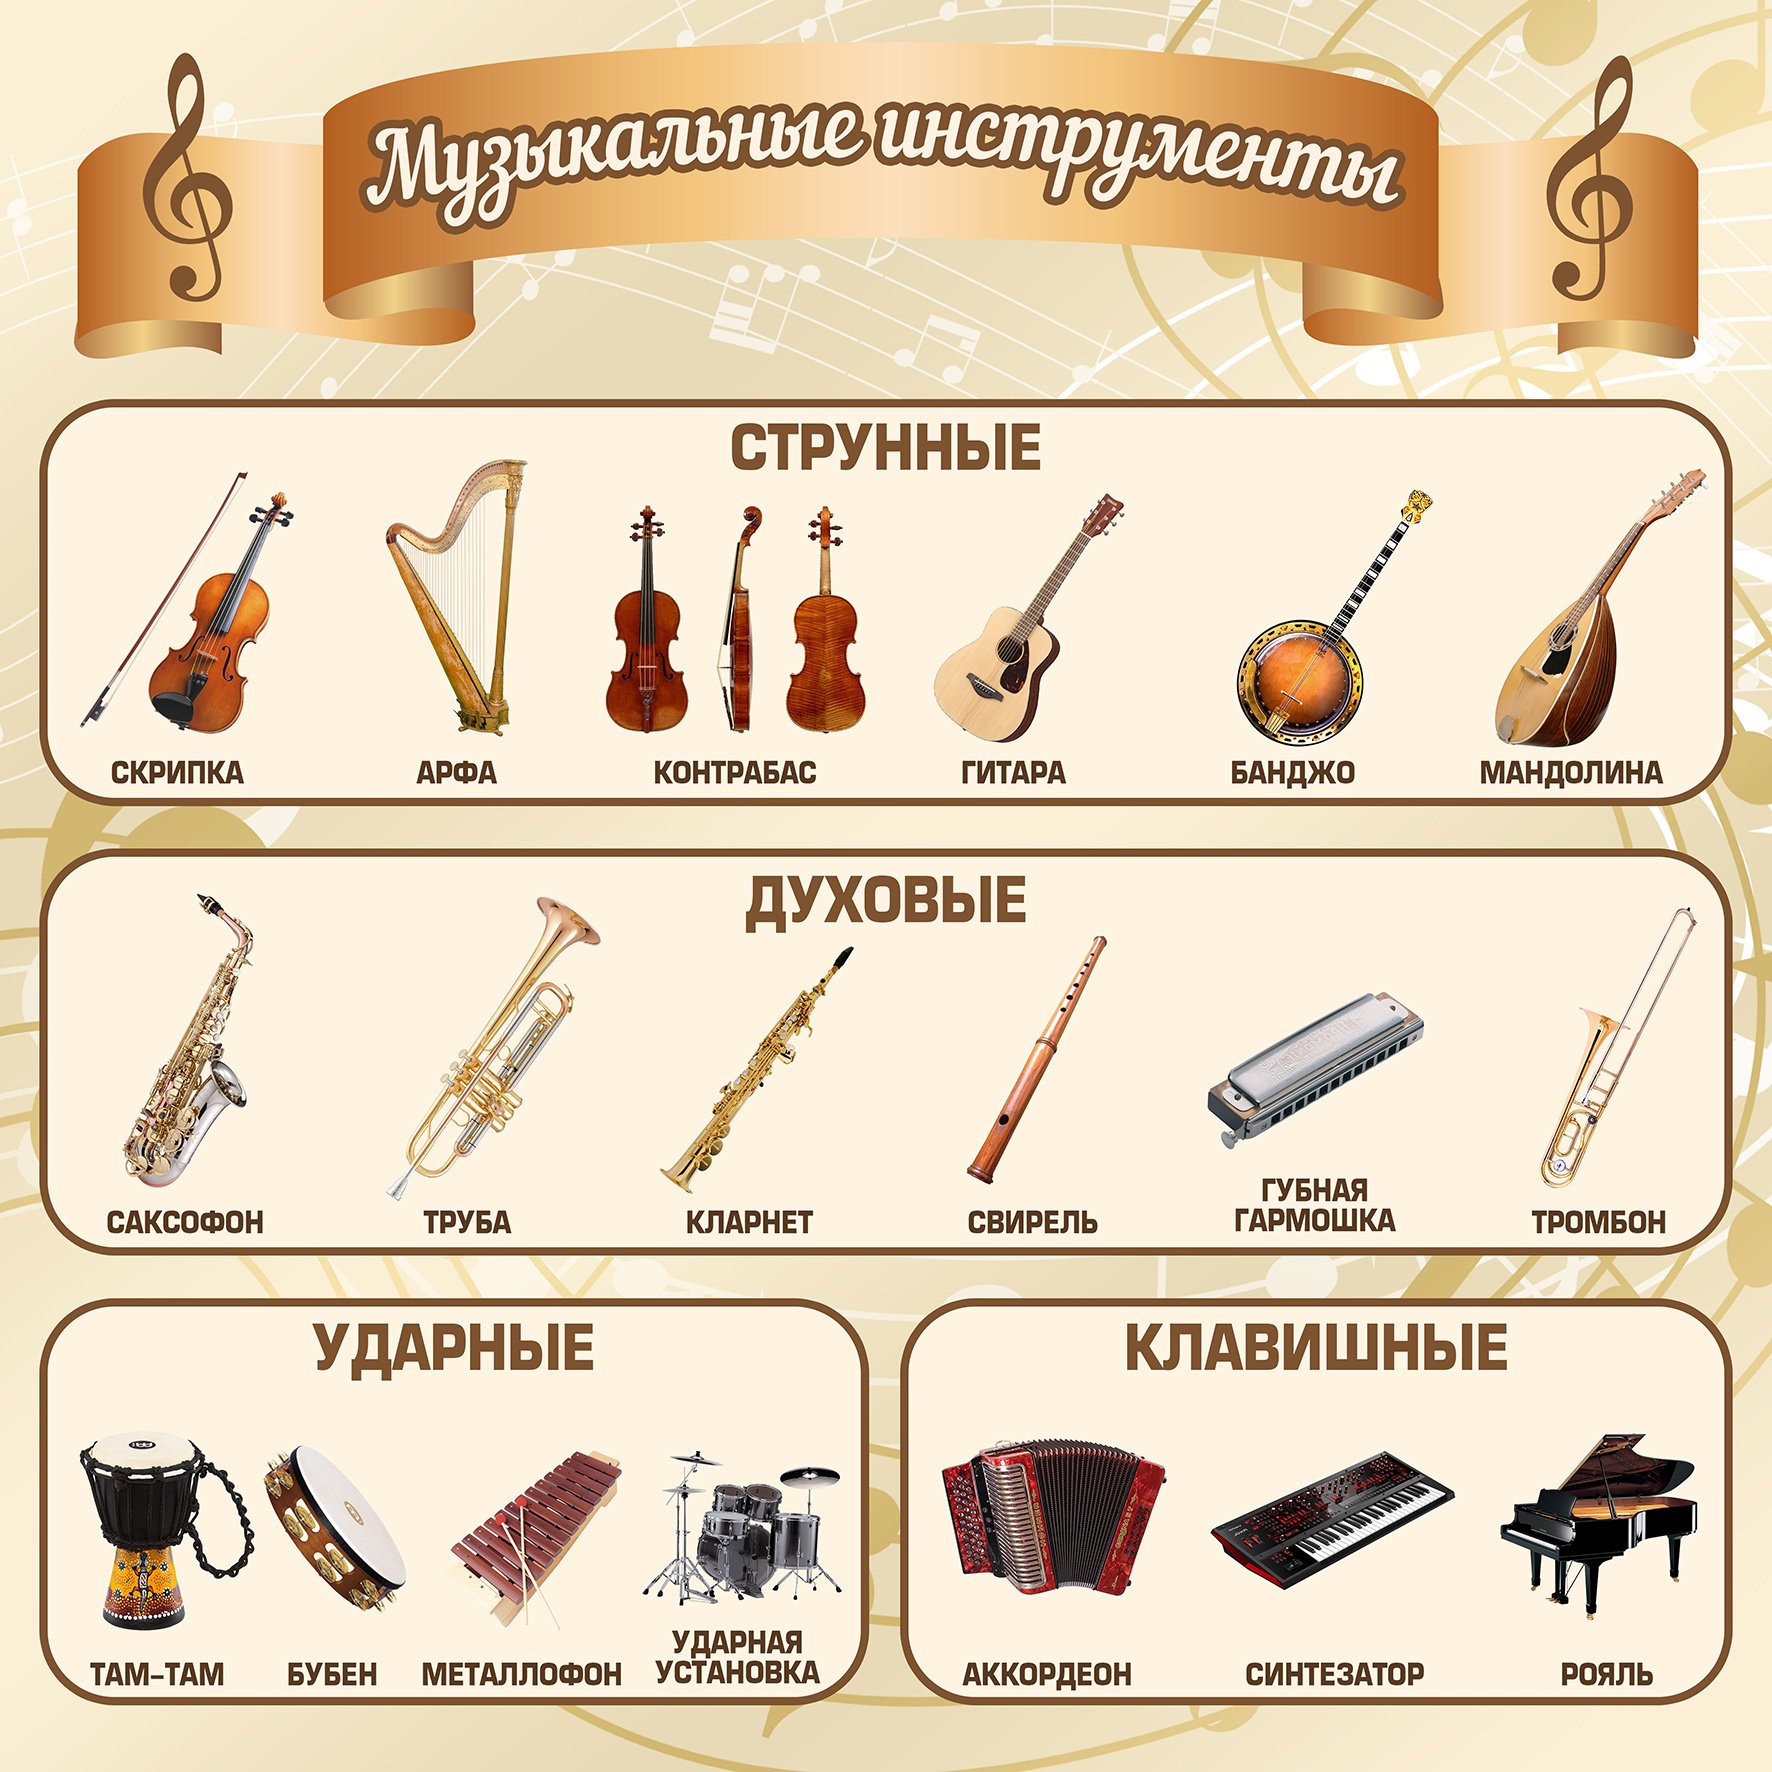 Струнные, духовые, ударные, язычковые музыкальные инструменты